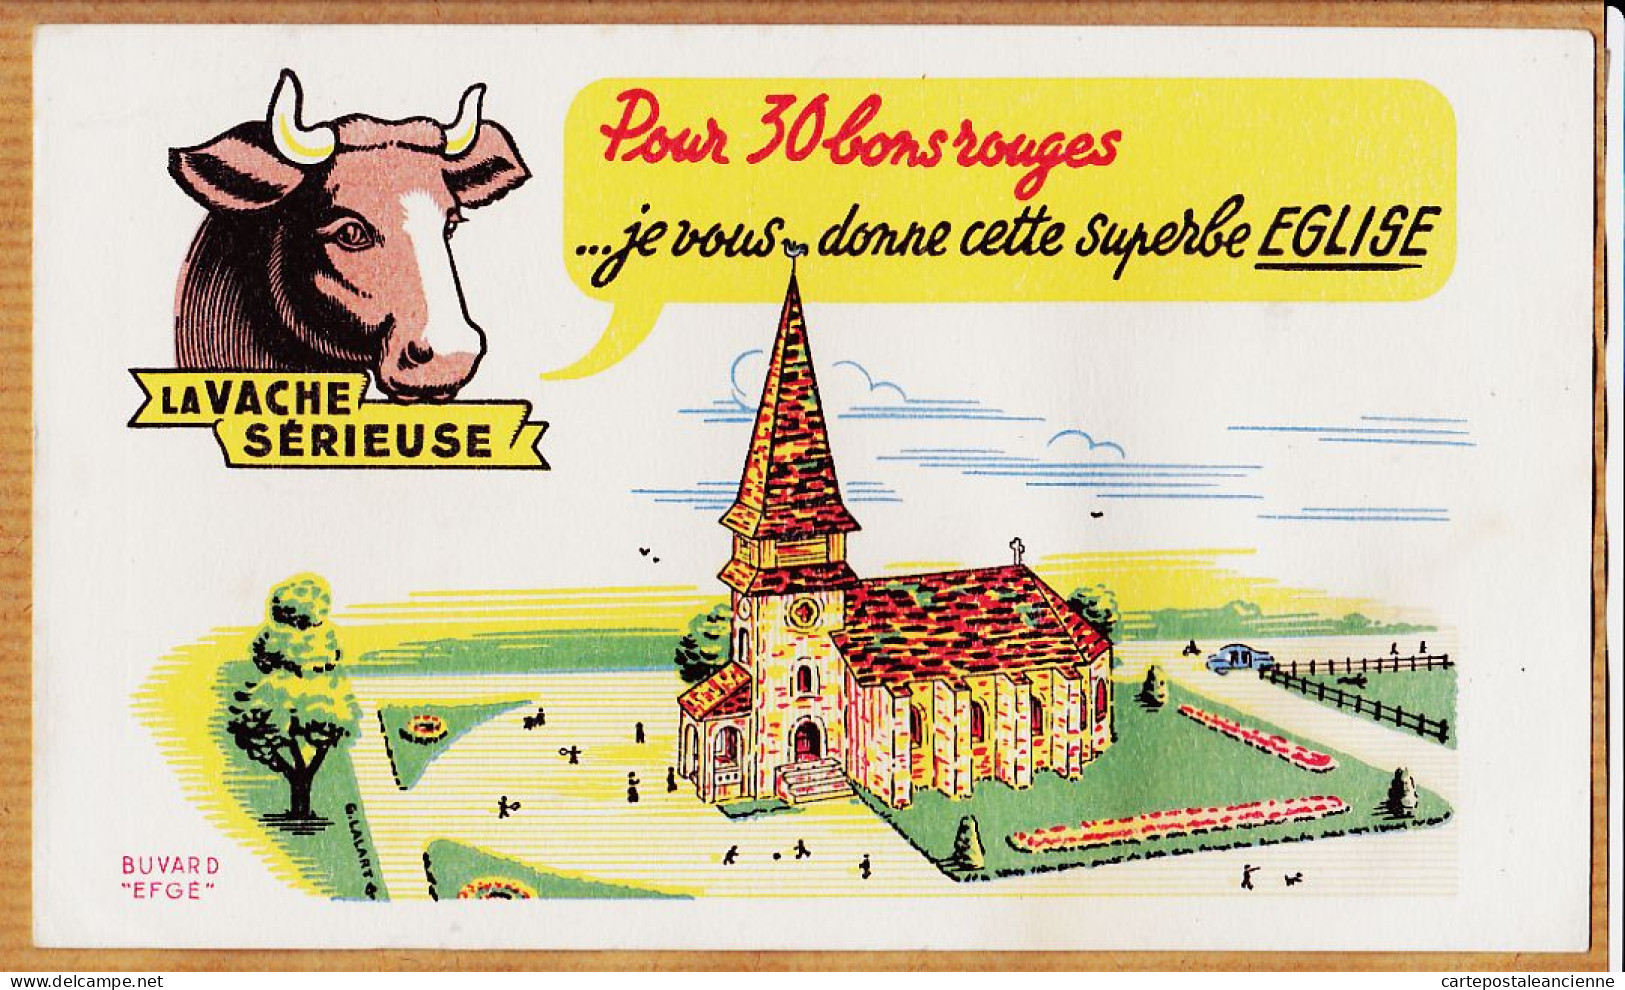 14851 / ⭐ LA VACHE SERIEUSE Crème Double Crème De Gruyère Pour 30 Bons Cette Superbe Eglise / Buvard EFGE 1950s Cppub - Lebensmittel